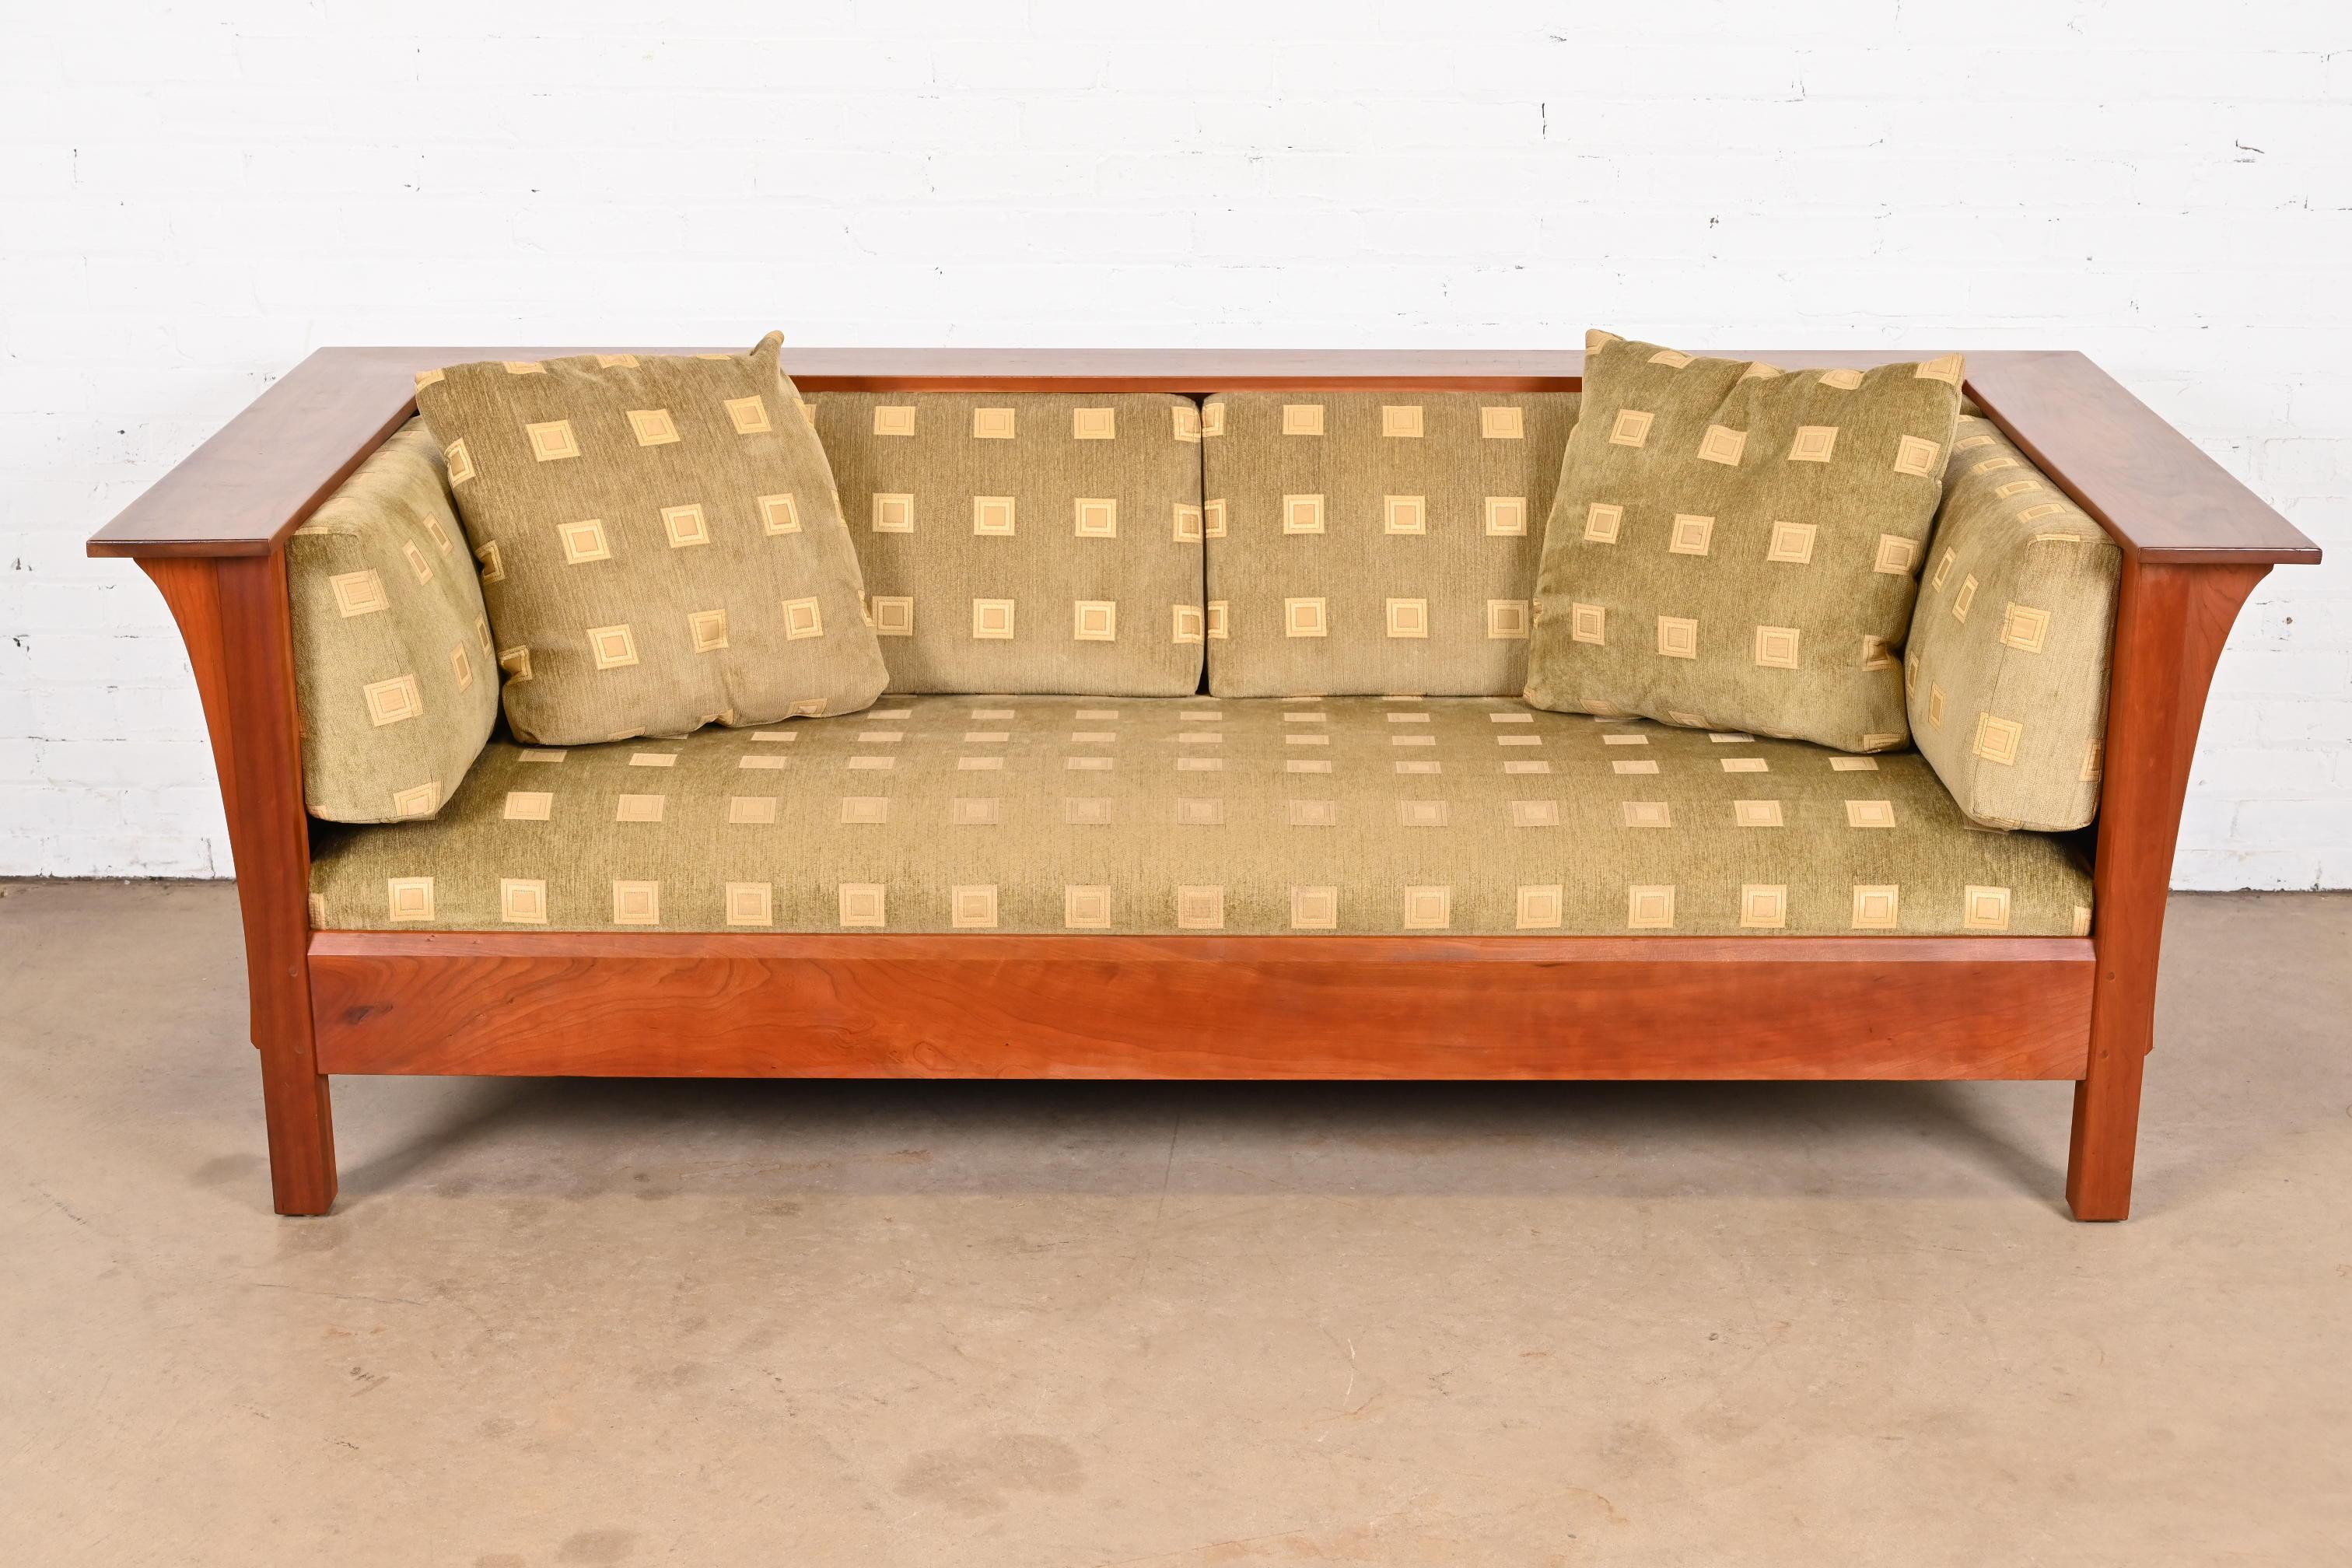 Ein wunderschönes Sofa im Missions- oder Arts & Crafts-Stil aus der Prärie

Von L. & J.G Stickley

USA, 21. Jahrhundert

Gestell aus massivem Kirschholz, mit Originalpolsterung.

Maße: 84,5 